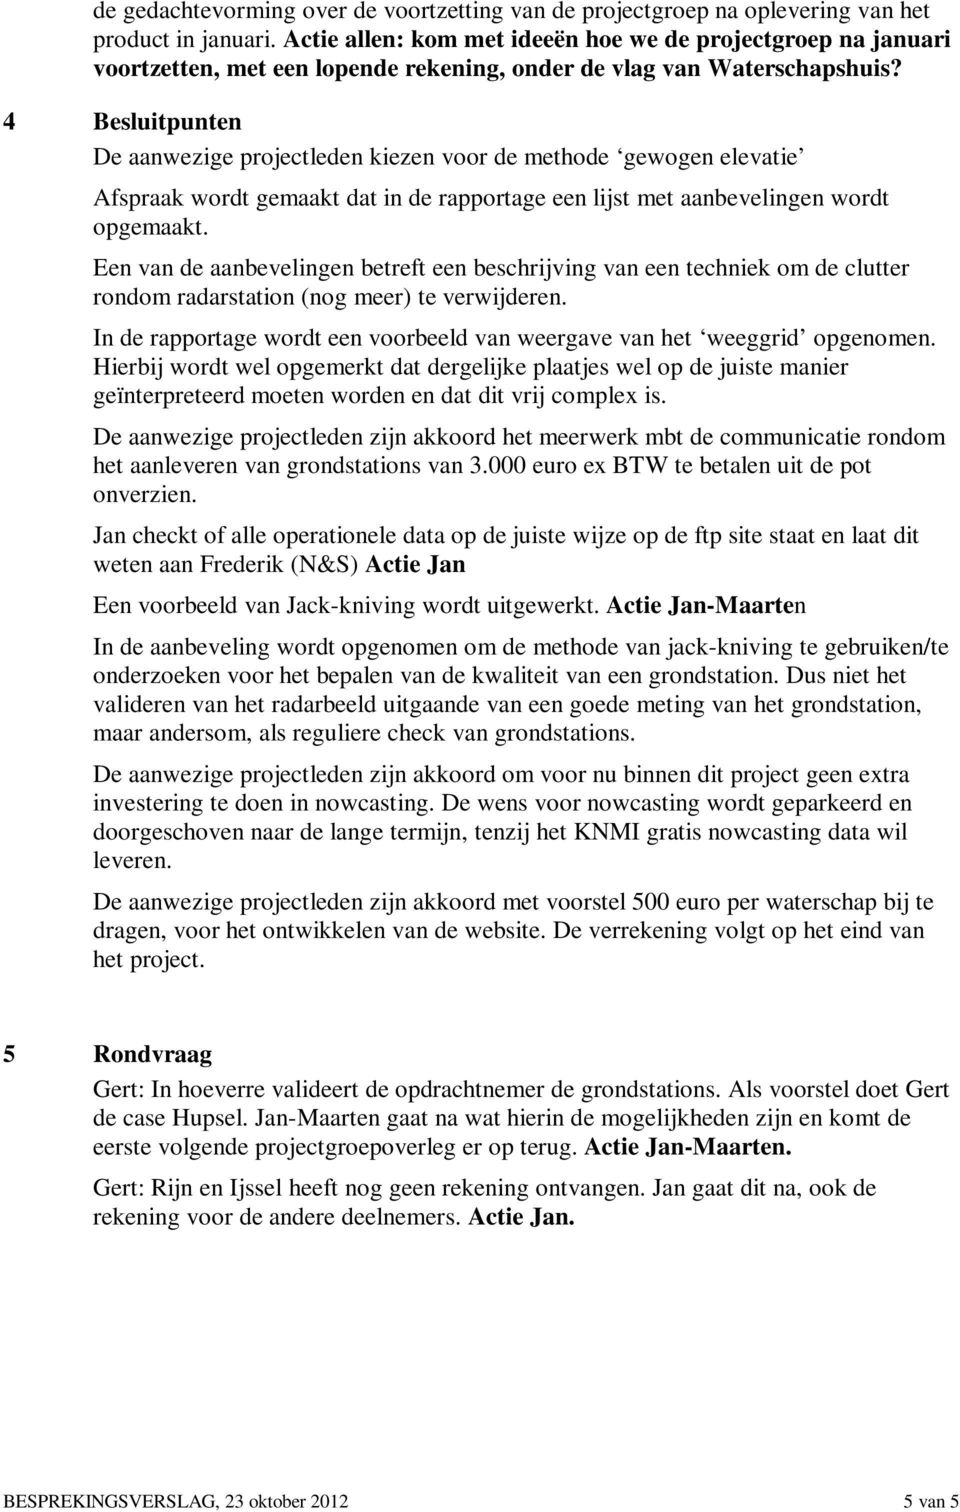 4 Besluitpunten De aanwezige projectleden kiezen voor de methode gewogen elevatie Afspraak wordt gemaakt dat in de rapportage een lijst met aanbevelingen wordt opgemaakt.